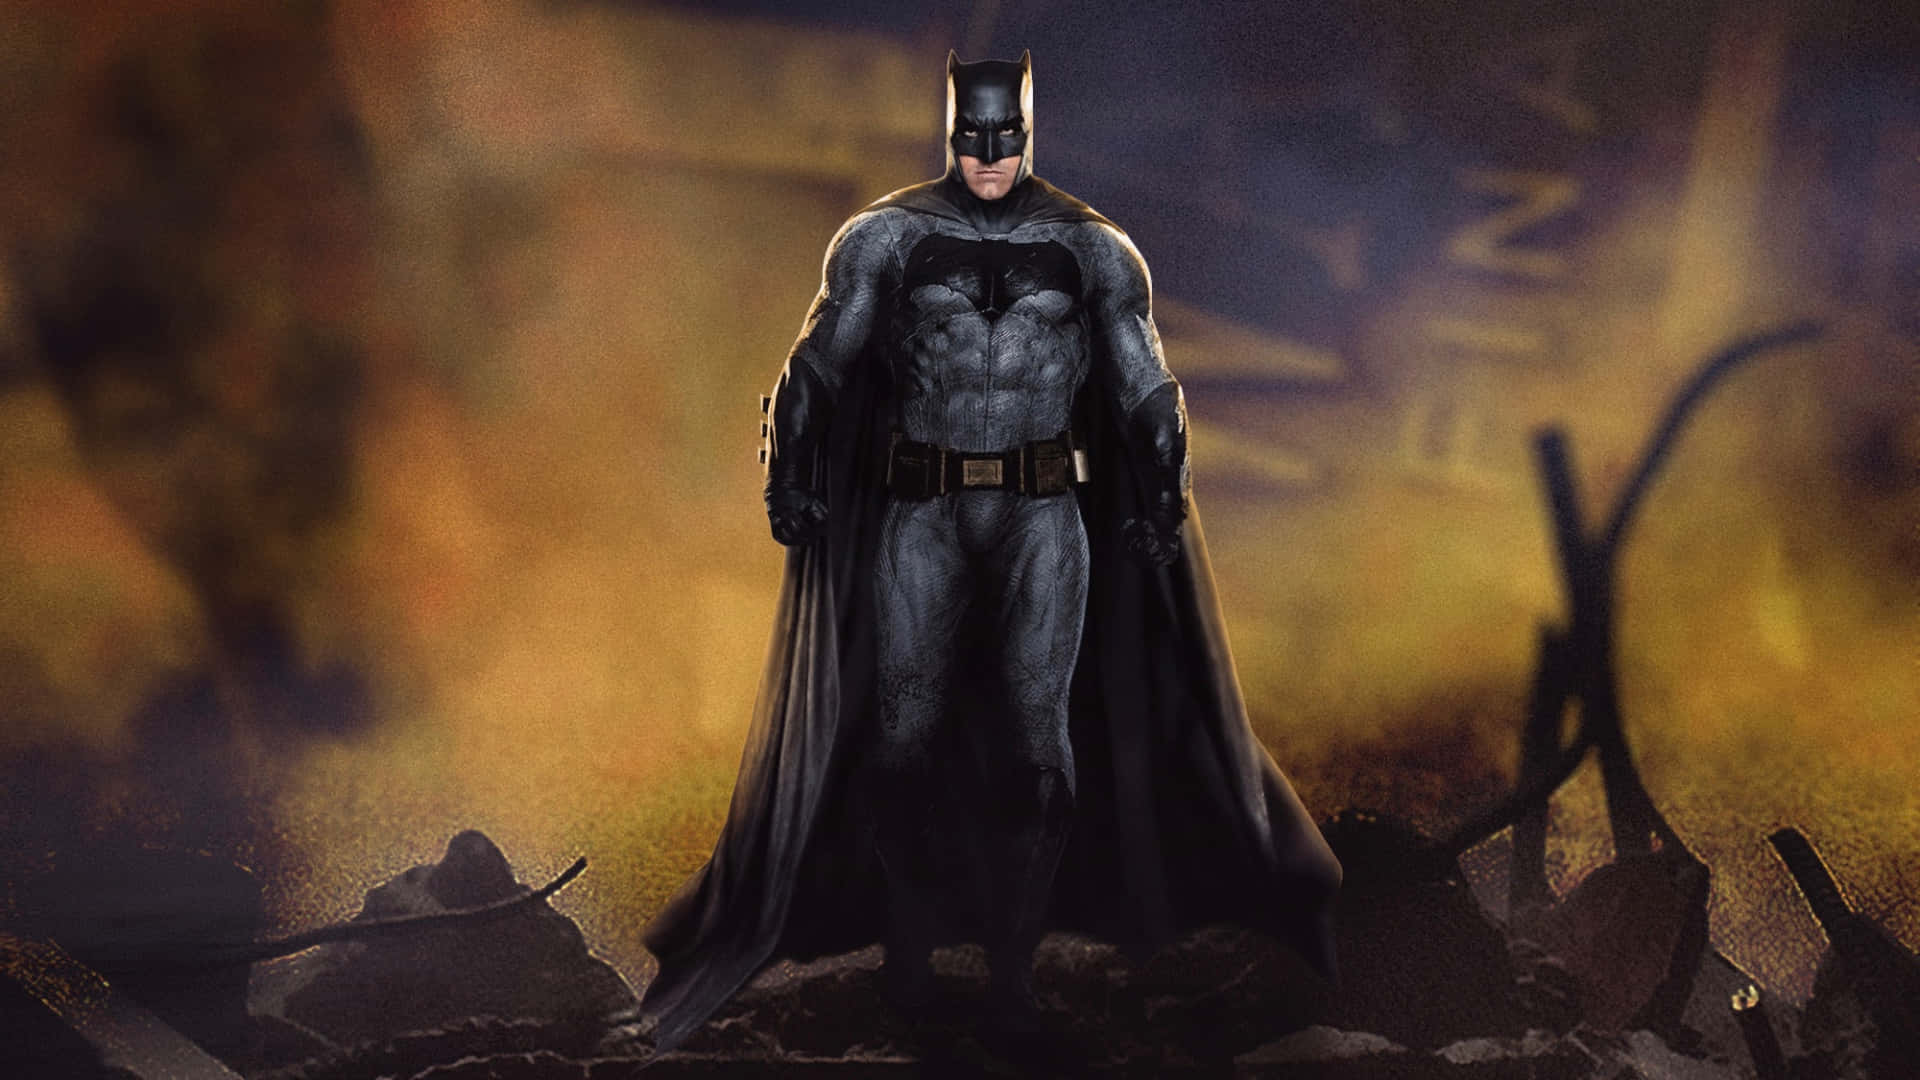 Dark Knight Vigilance Wallpaper